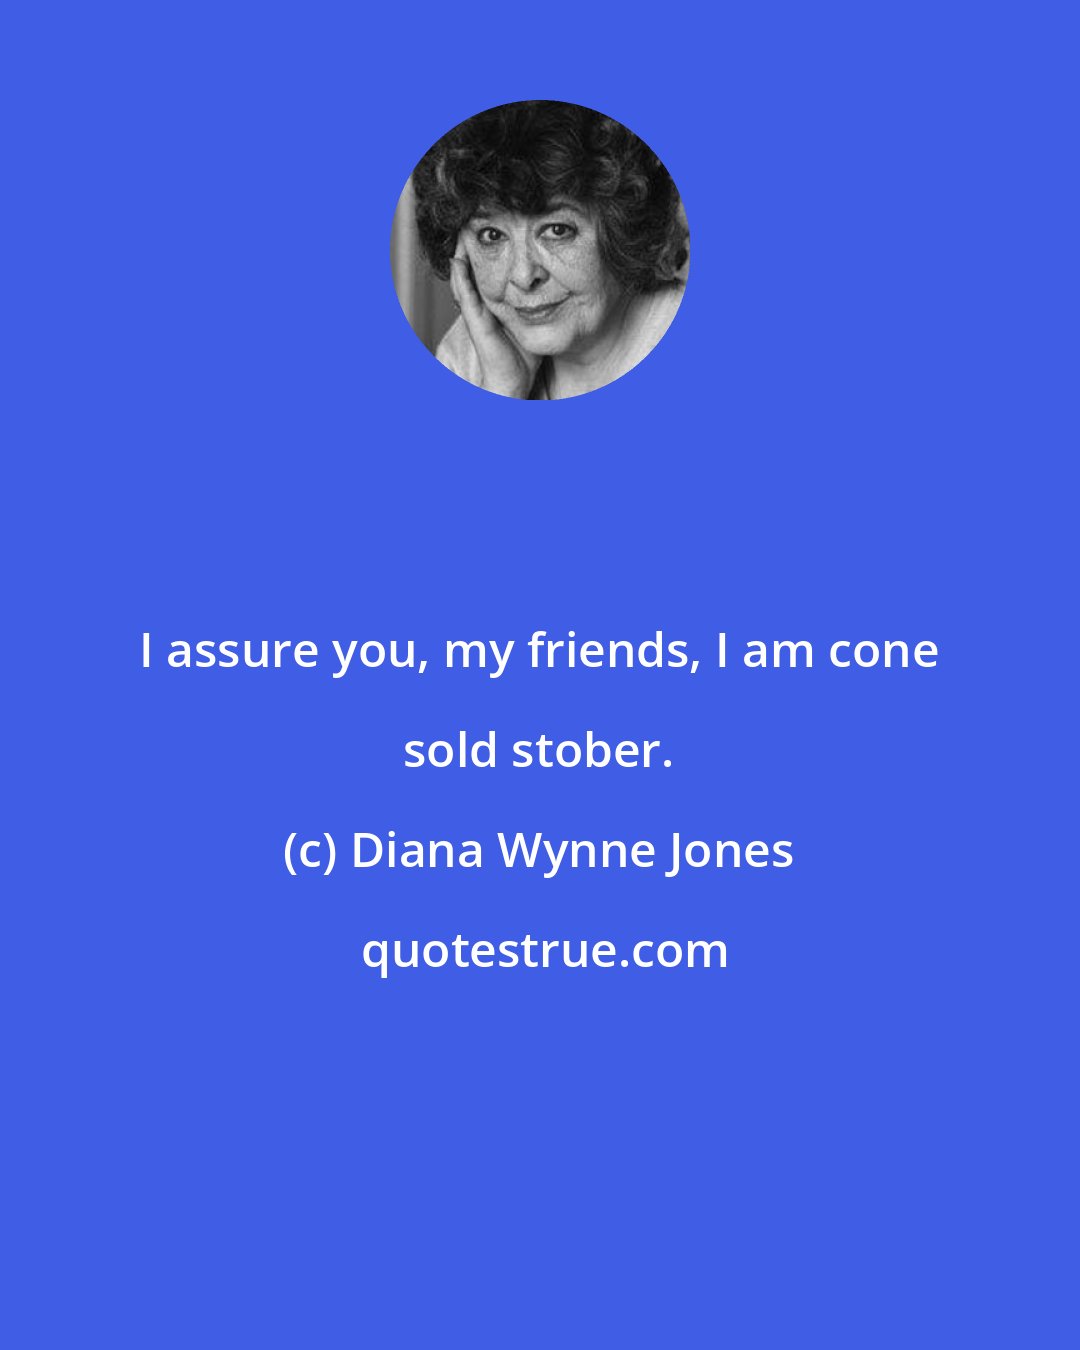 Diana Wynne Jones: I assure you, my friends, I am cone sold stober.